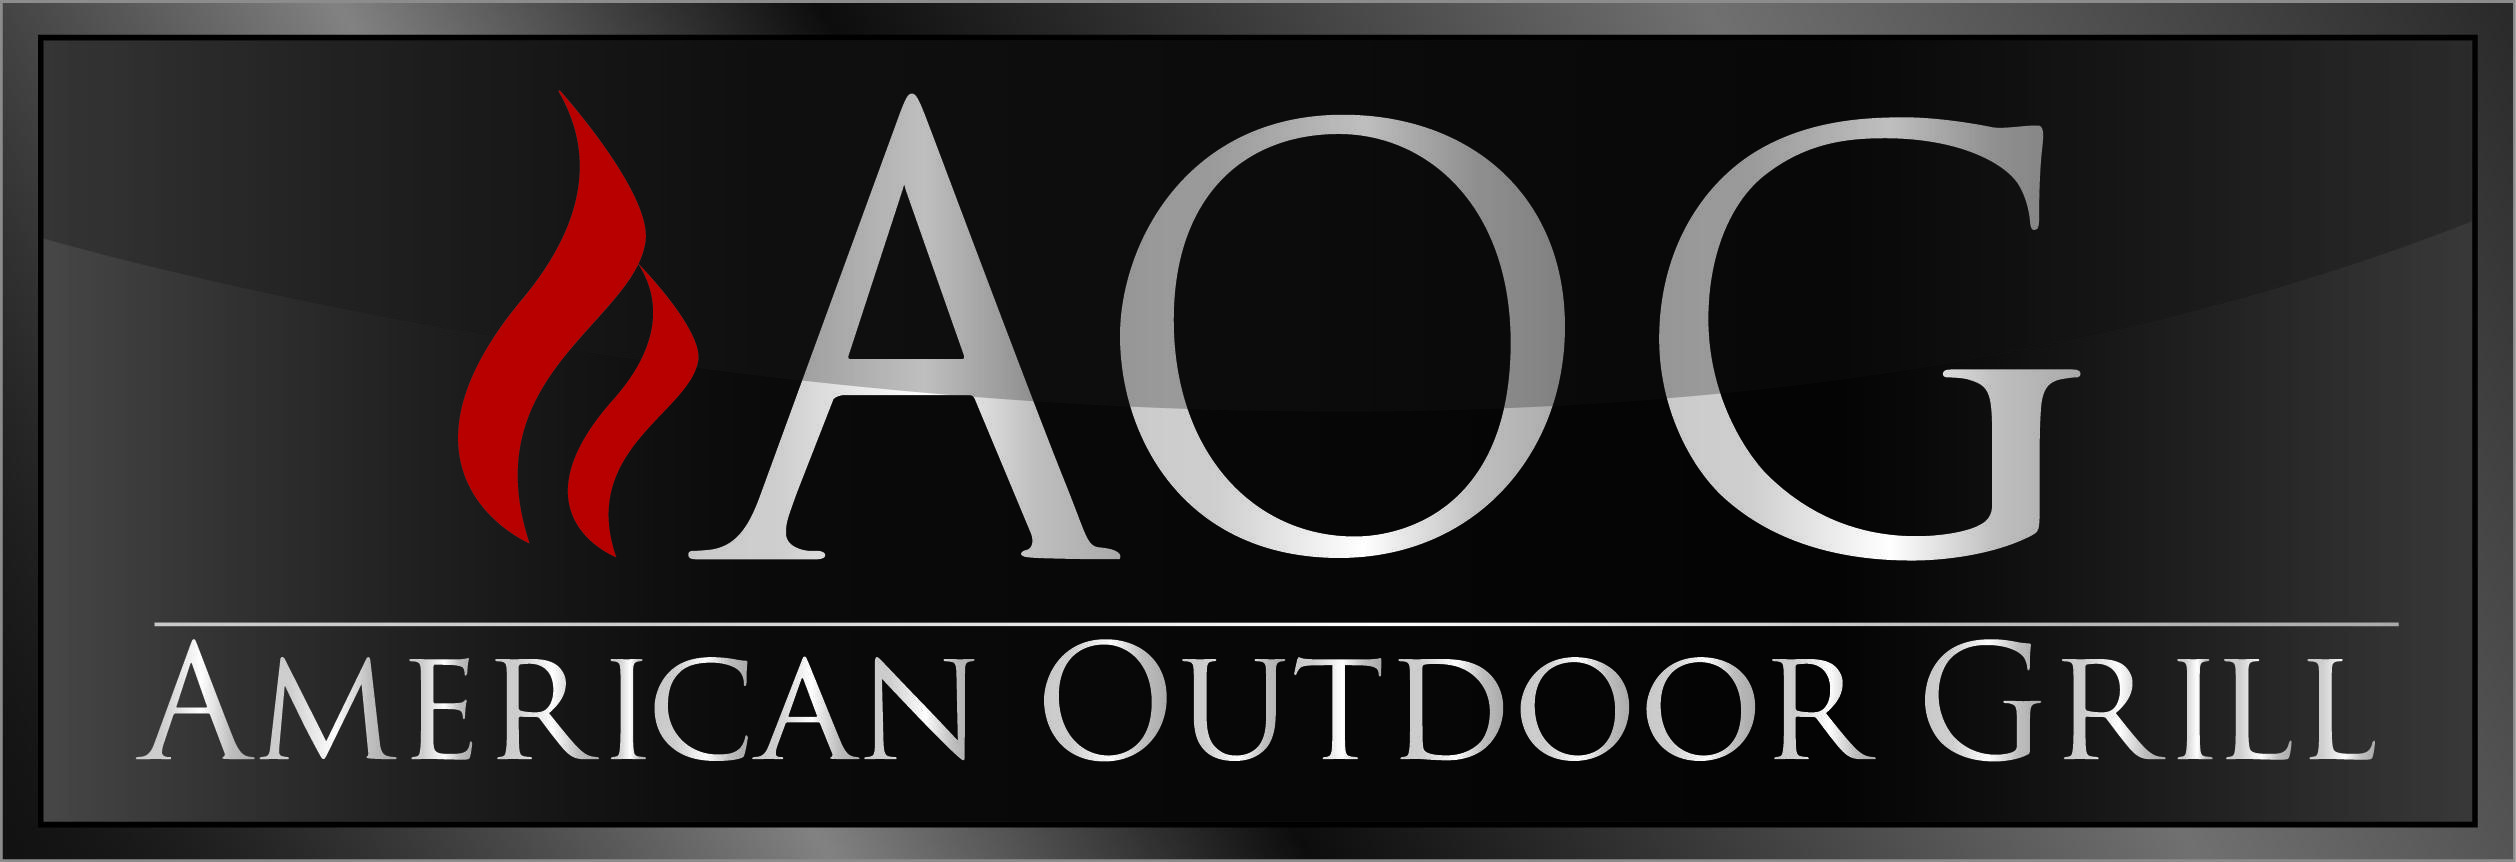 American Outdoor Company Logo - American Outdoor Grill